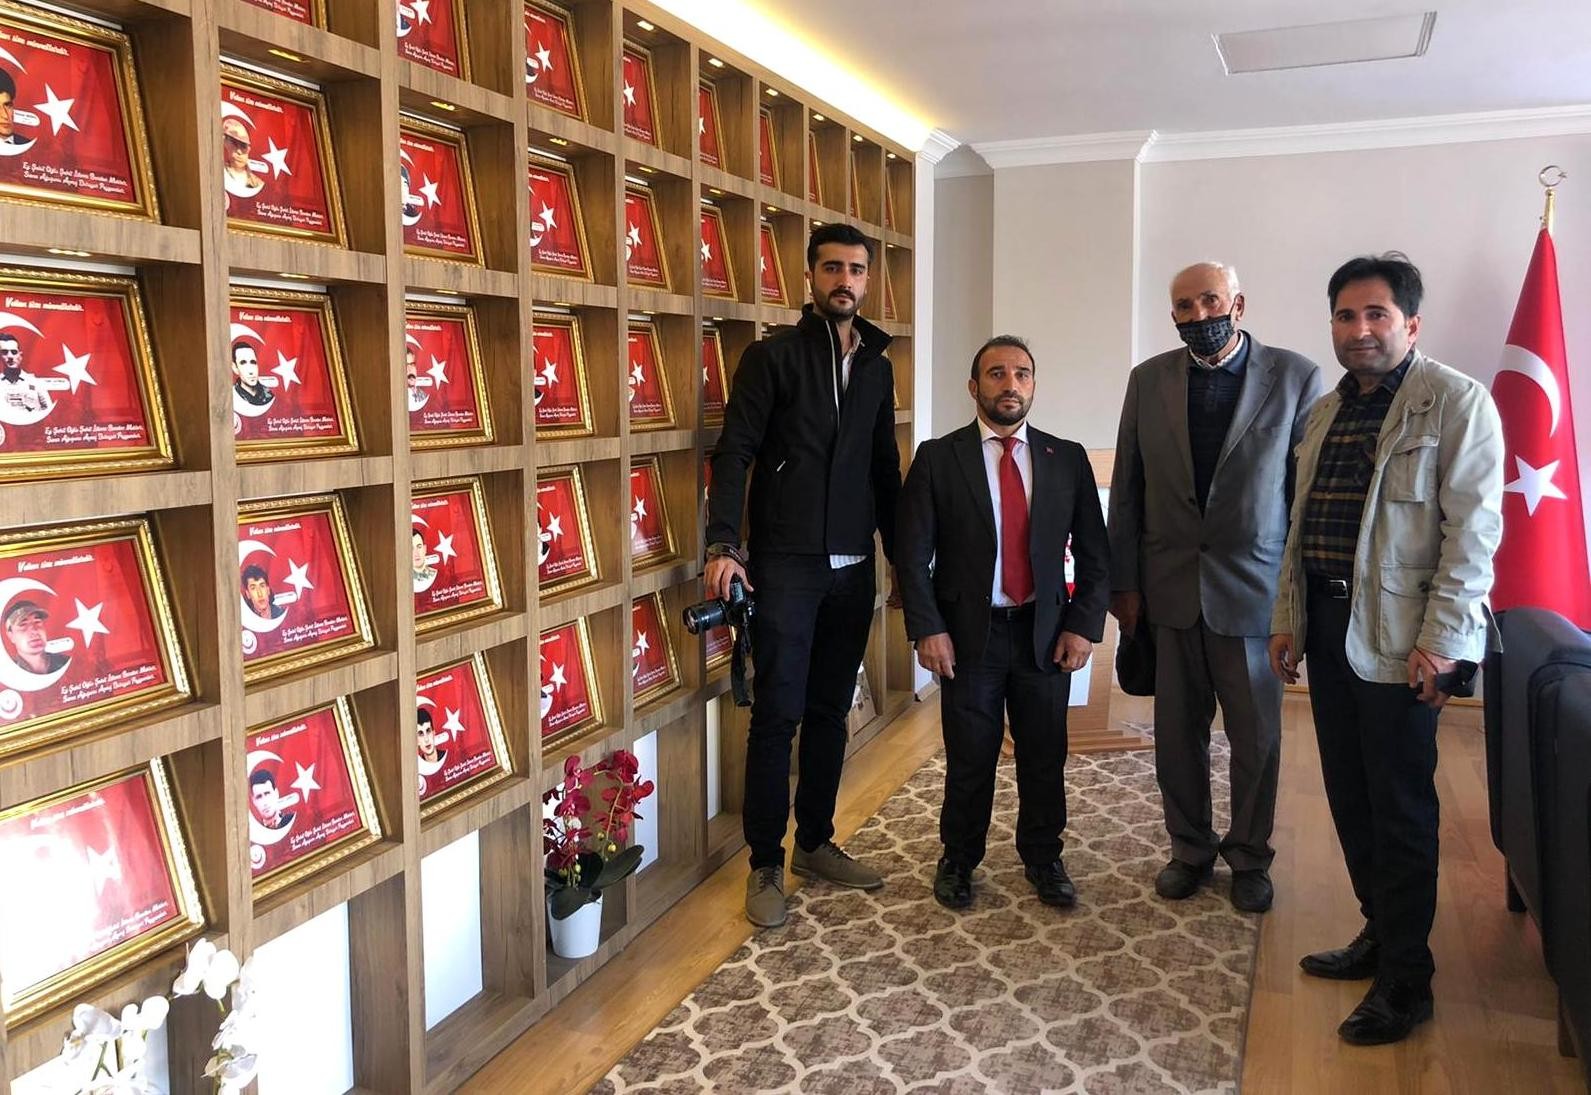 Şehit Aileleri Koruma Derneği Başkanı Zengin: Şehitler; millet olma bilincinin temel yapı taşıdır #erzincan